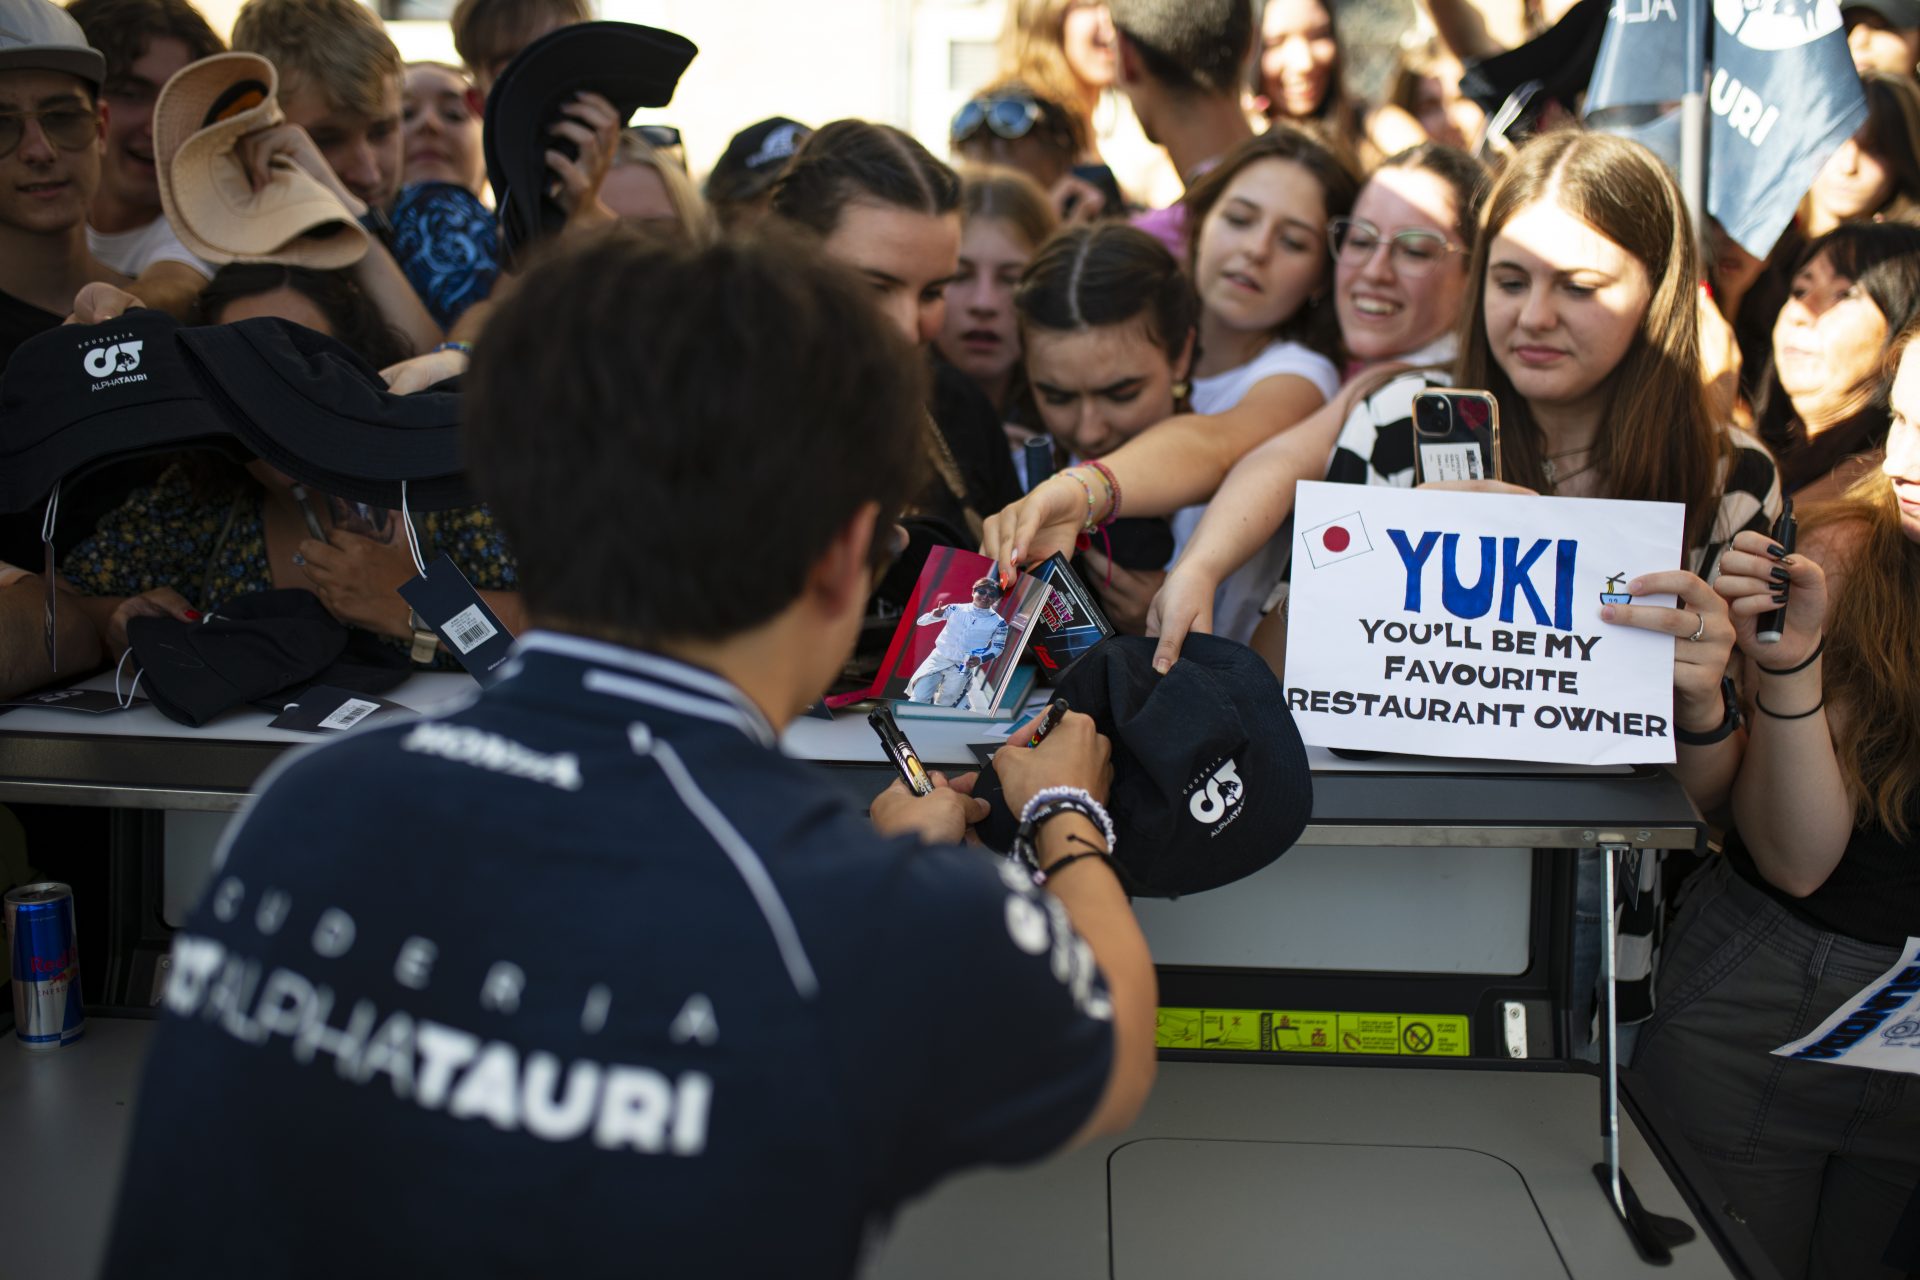 Racer Yuki Tsunoda and his many fans